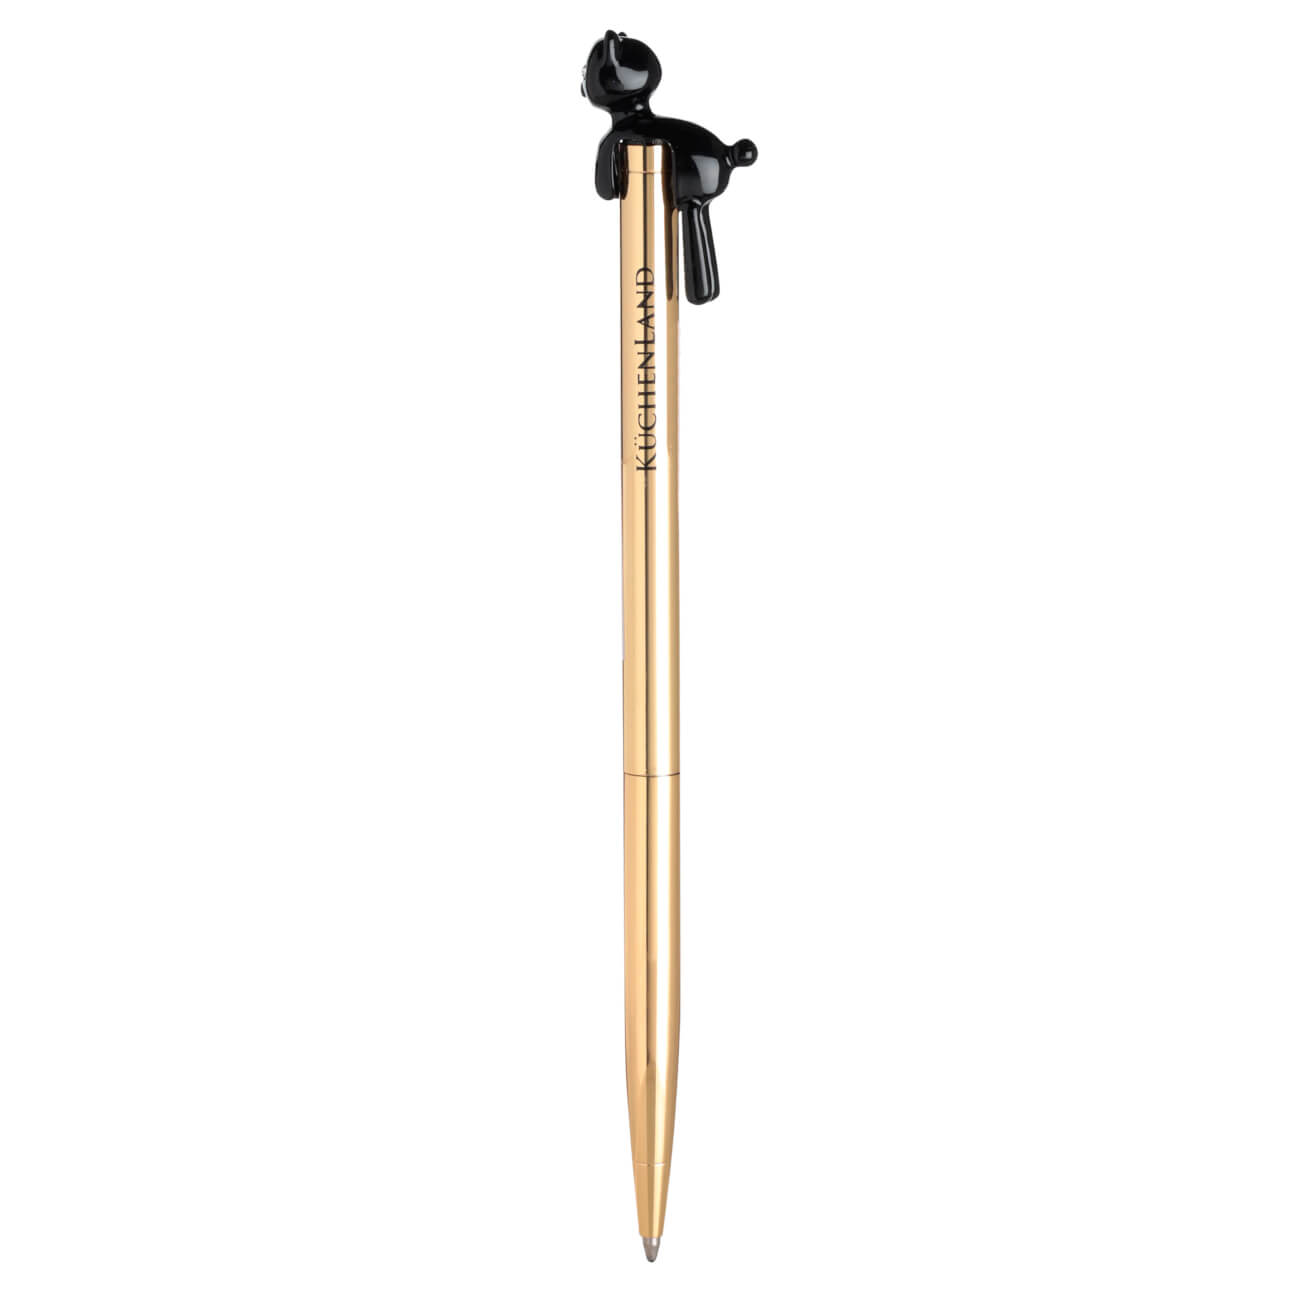 Ручка шариковая, 14 см, с фигуркой, металл, золотистая, Черный кот, Draw figure ручка подарочная шариковая в кожзам футляре